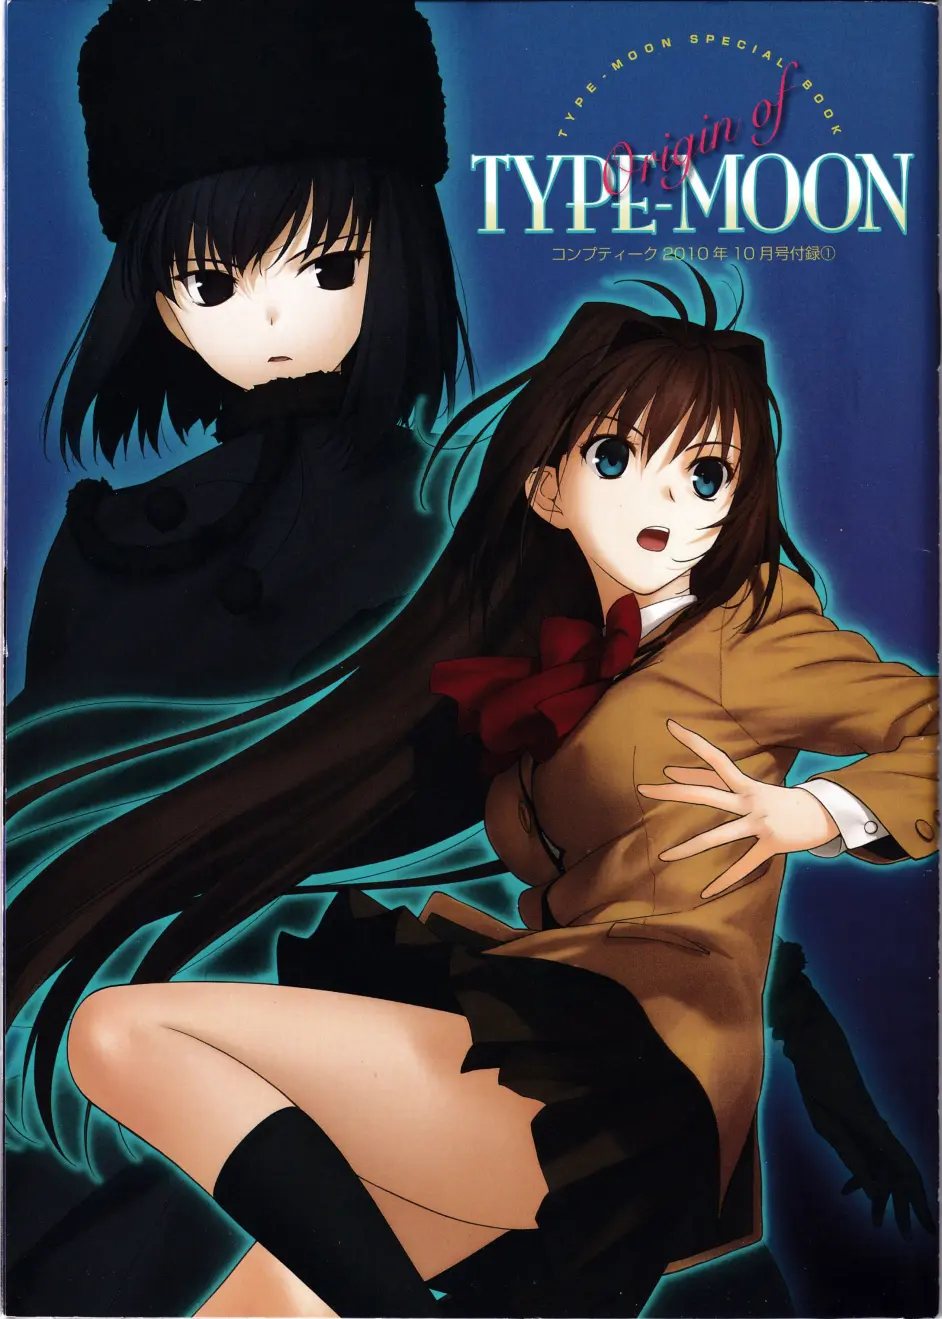 型月书籍介绍 十三 Type Moon篇 哔哩哔哩